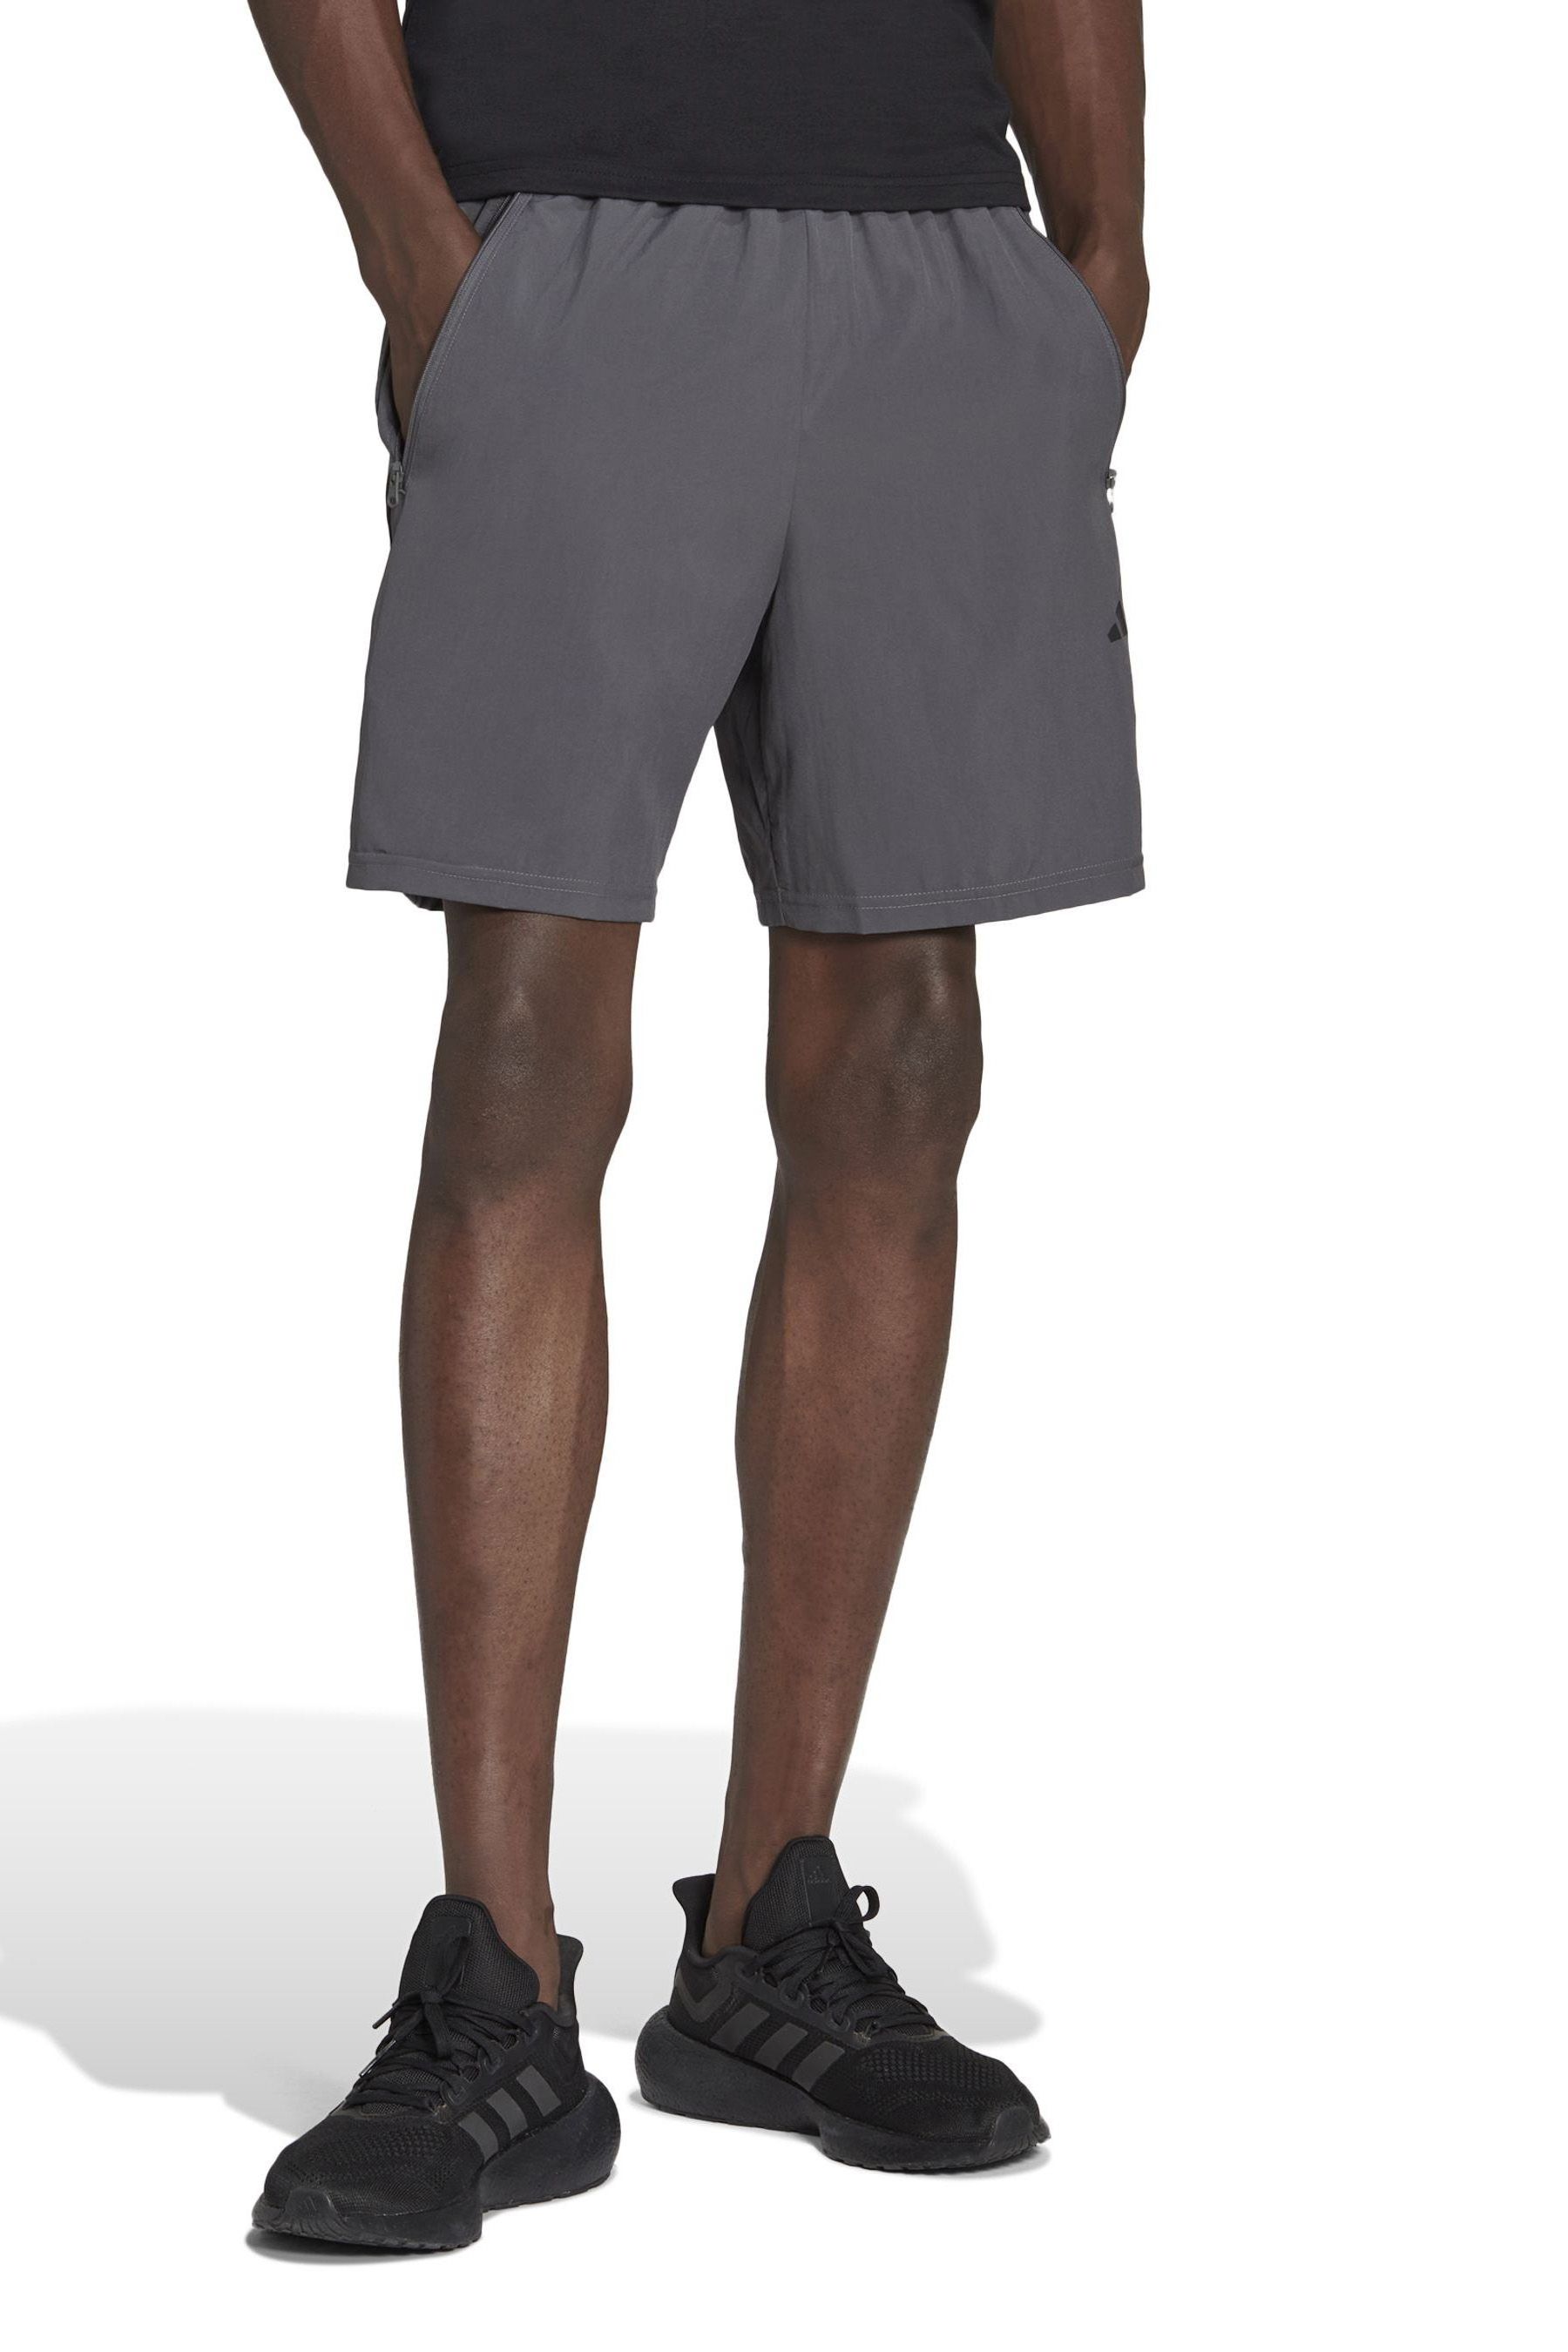 Тканые тренировочные шорты Performance Train Essentials adidas, серый